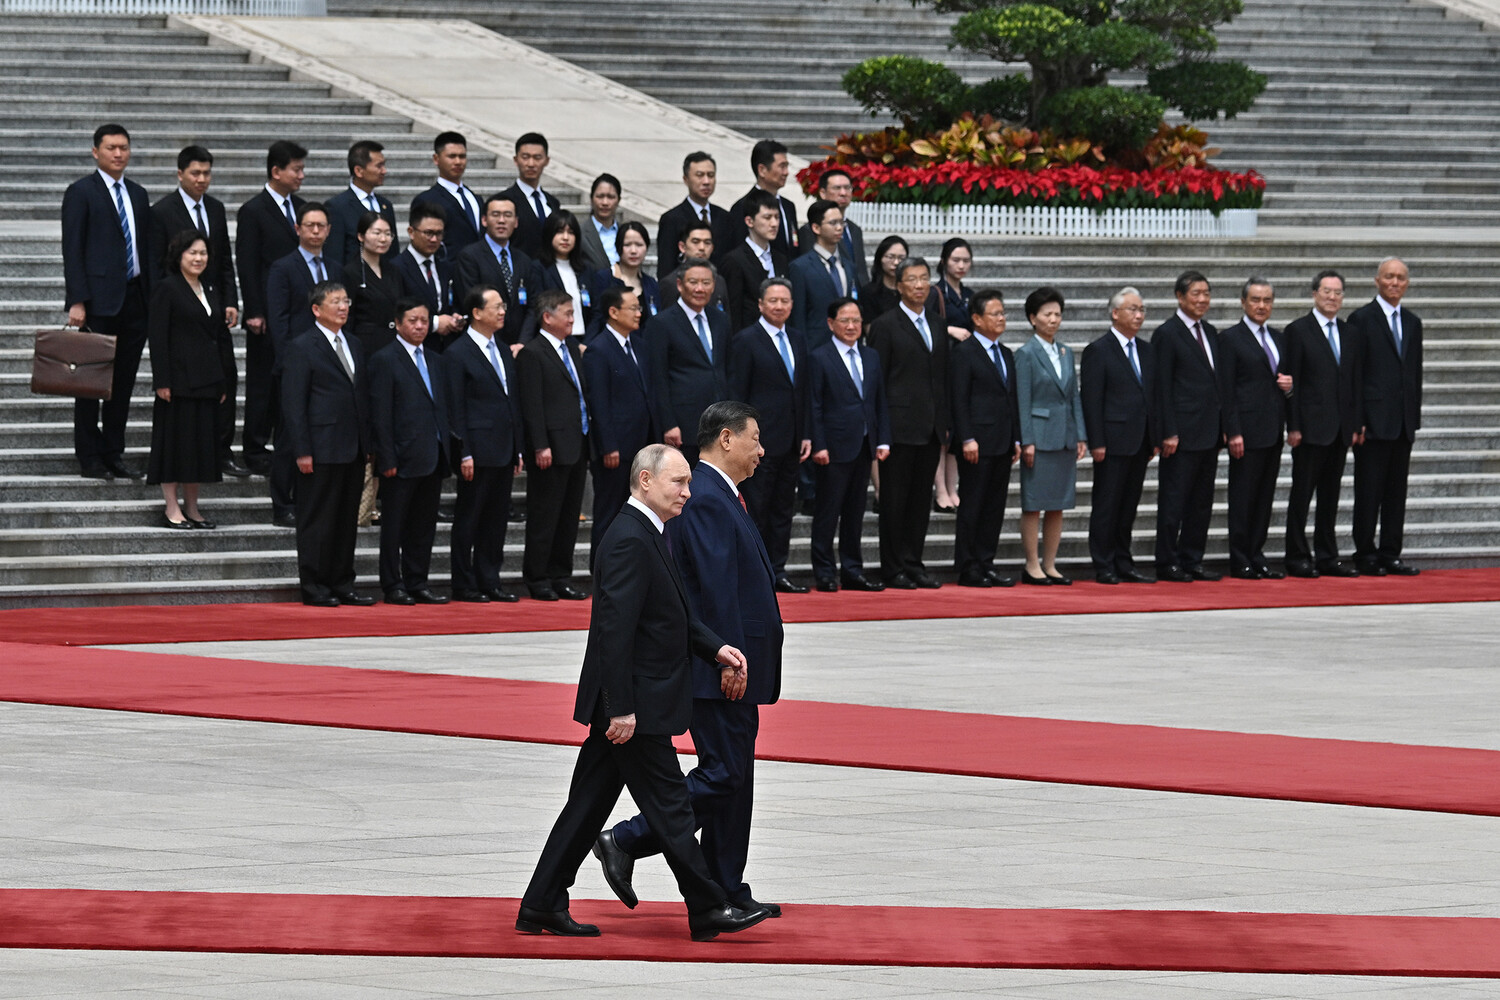 Неформальные переговоры Путина и Си Цзиньпина в Пекине завершились